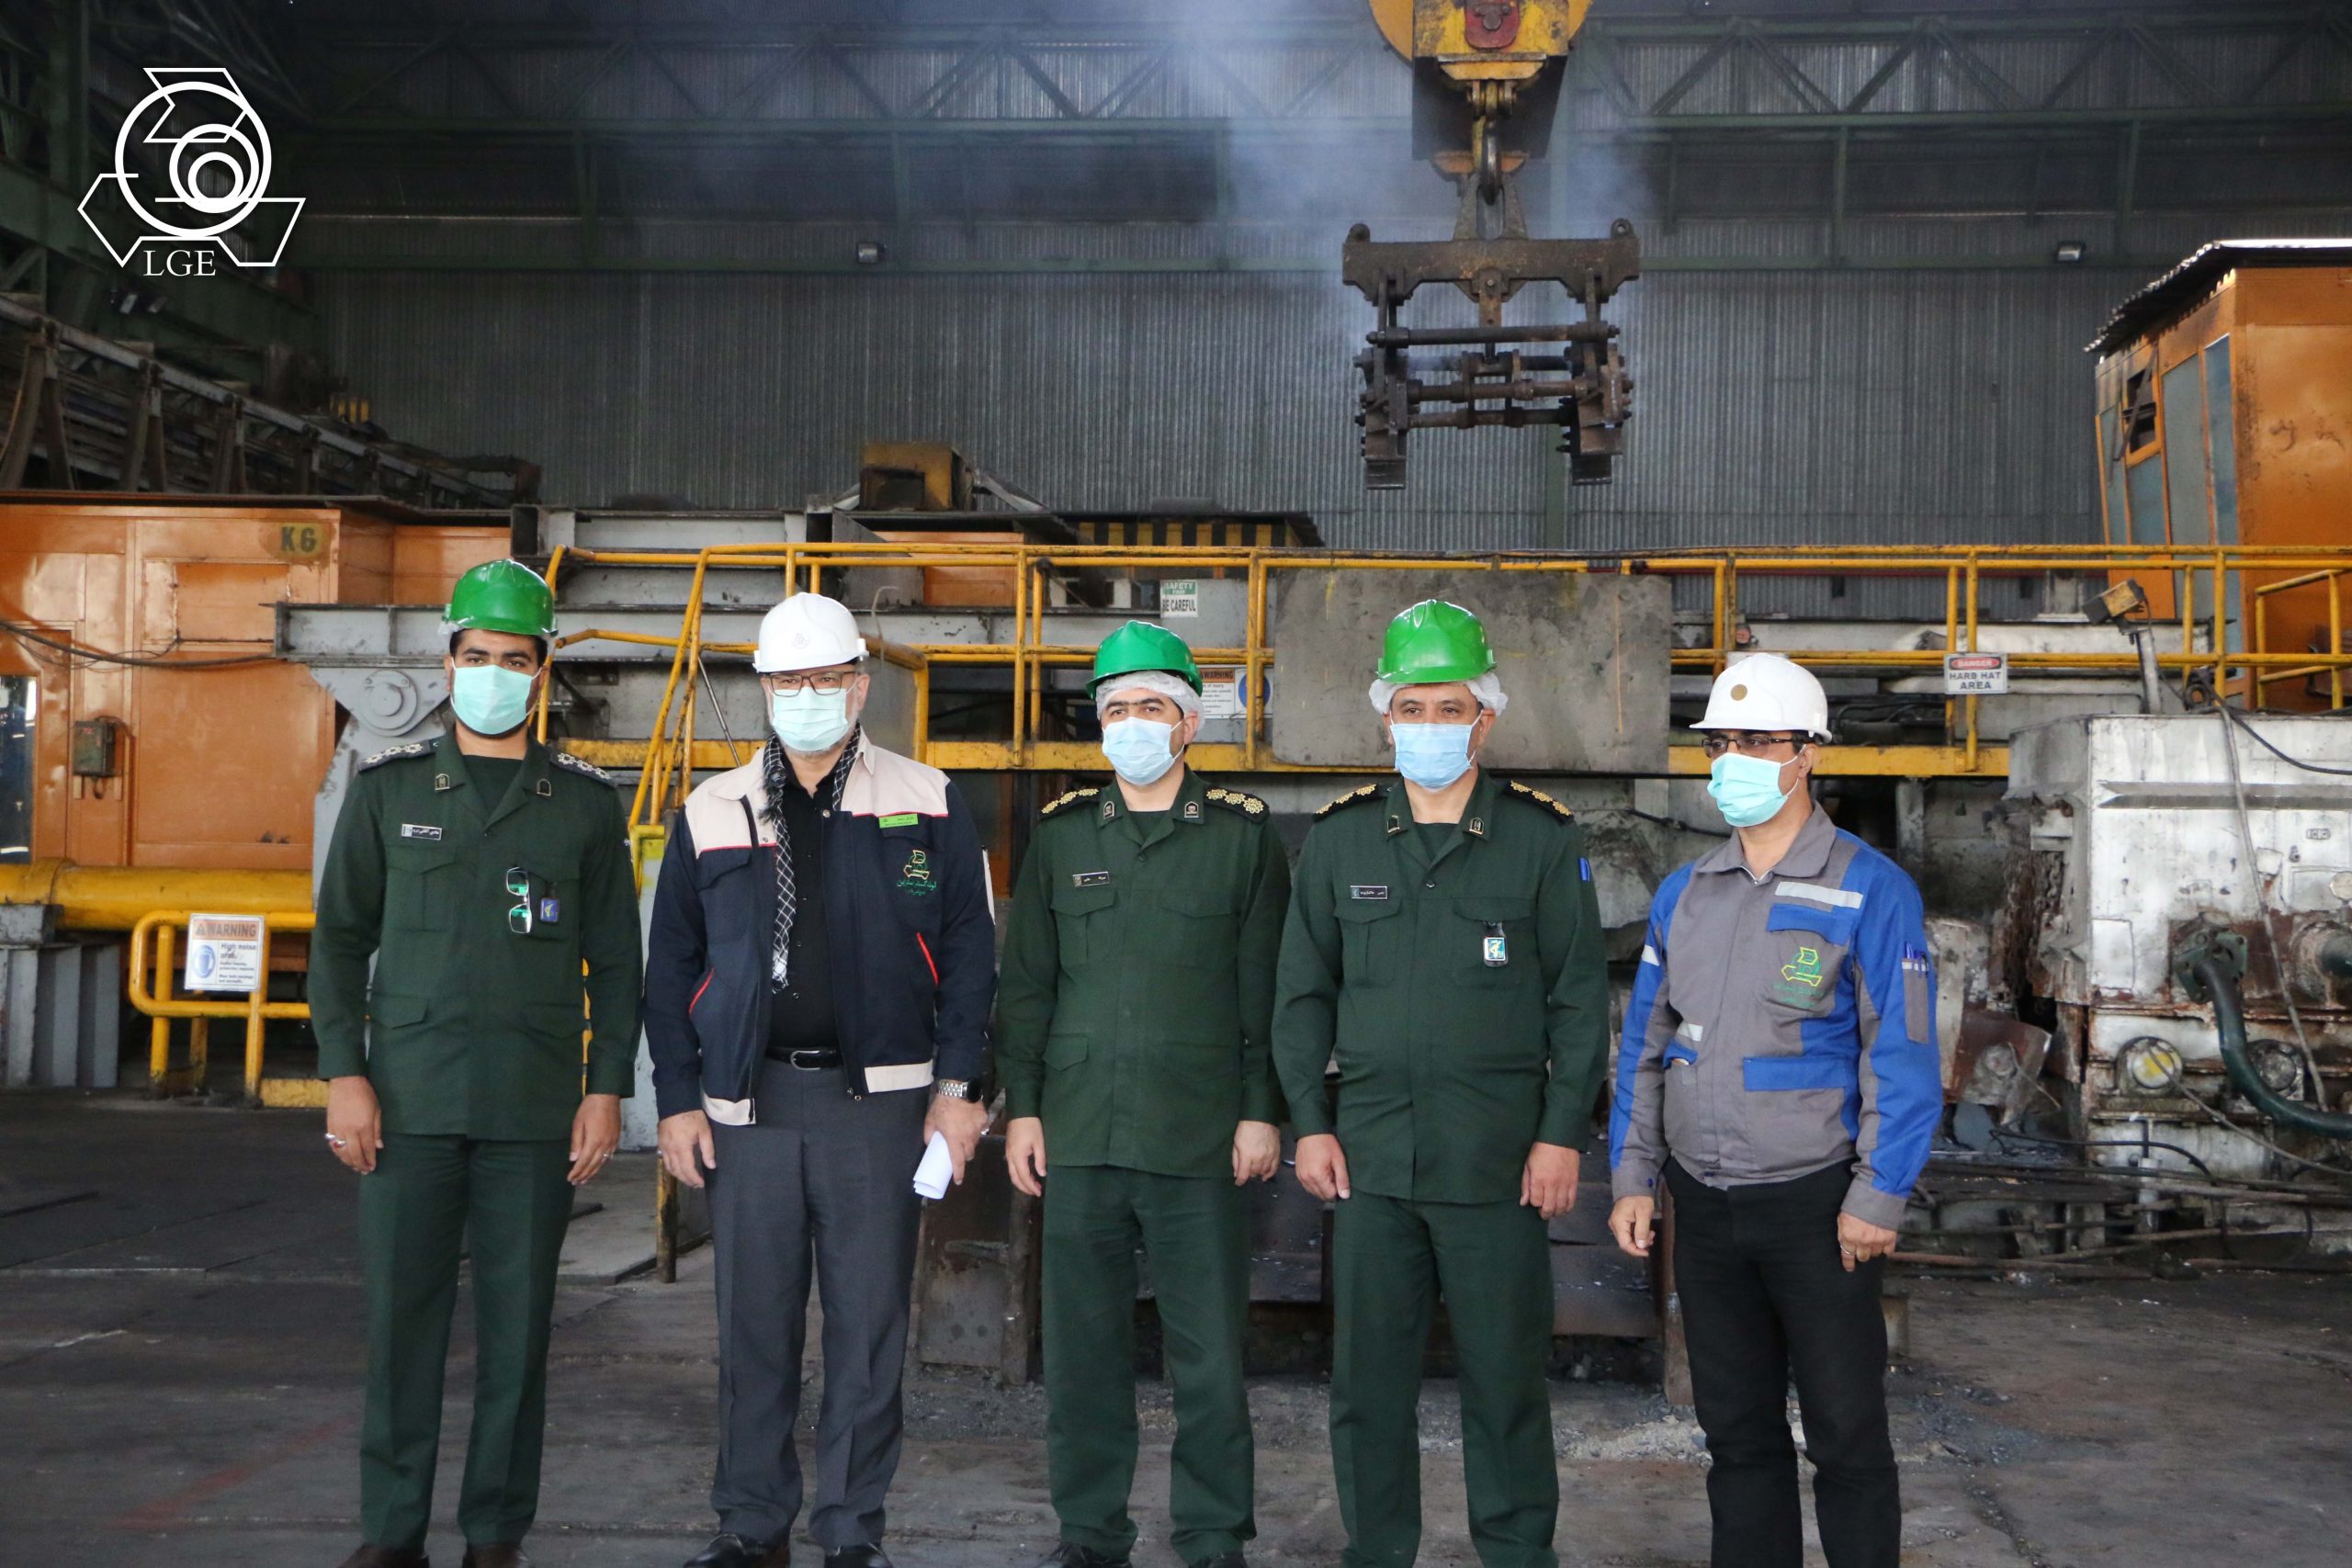 سرهنگ پاسدار دکتر حاتمی: «کارخانه لوله گستر، یکی از خاکریزهای مهم ایران در مقابل دشمن است»